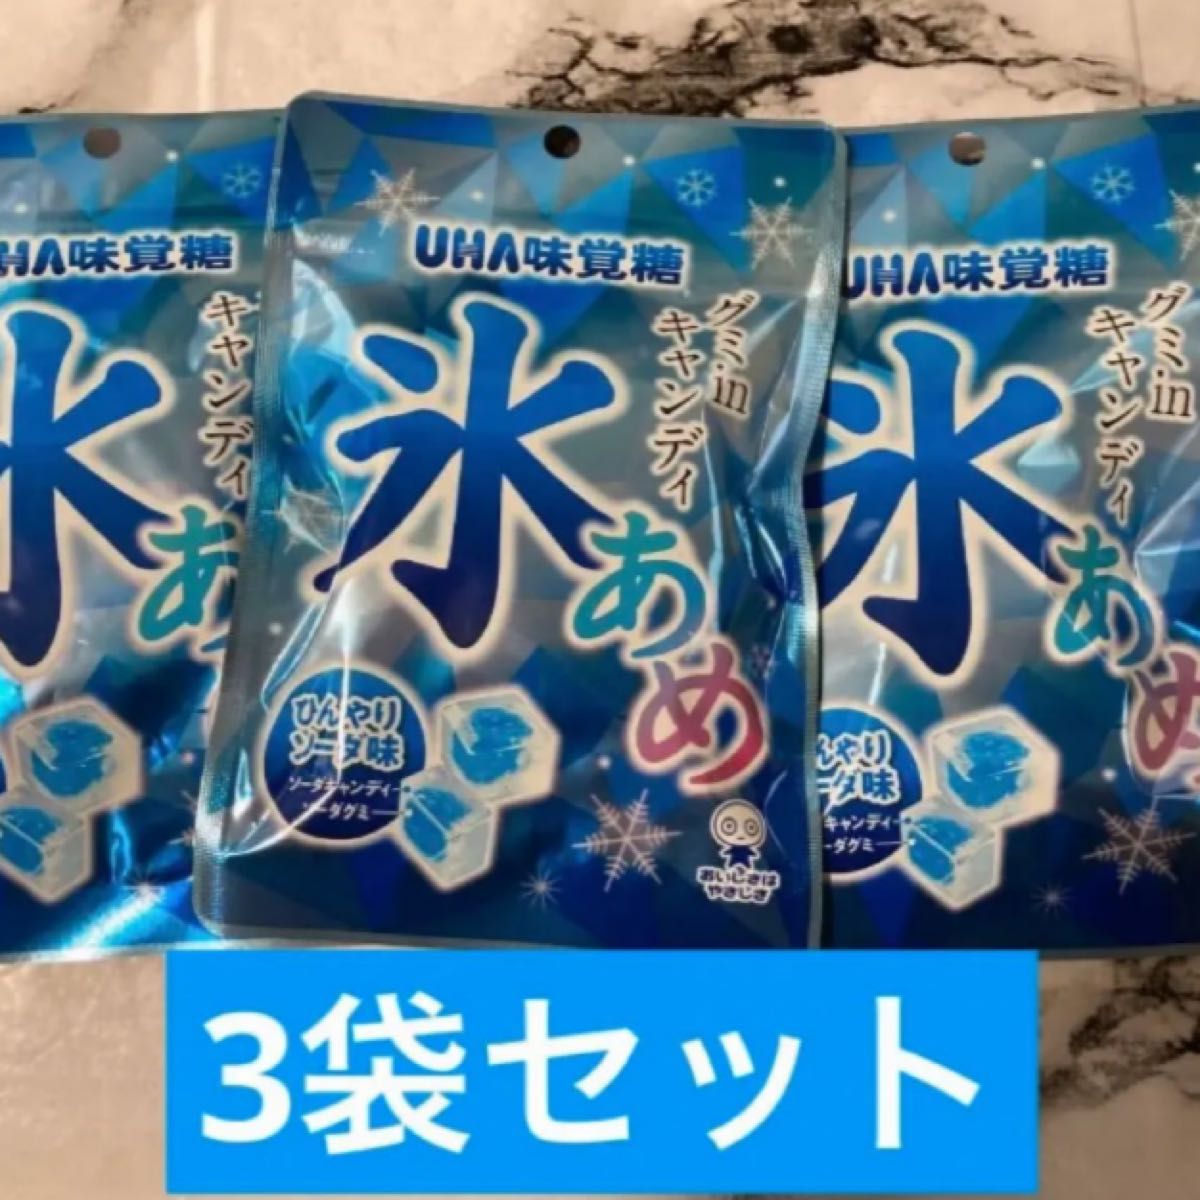 UHA味覚糖氷あめグミinキャンディひんやりソーダ味63g×3袋